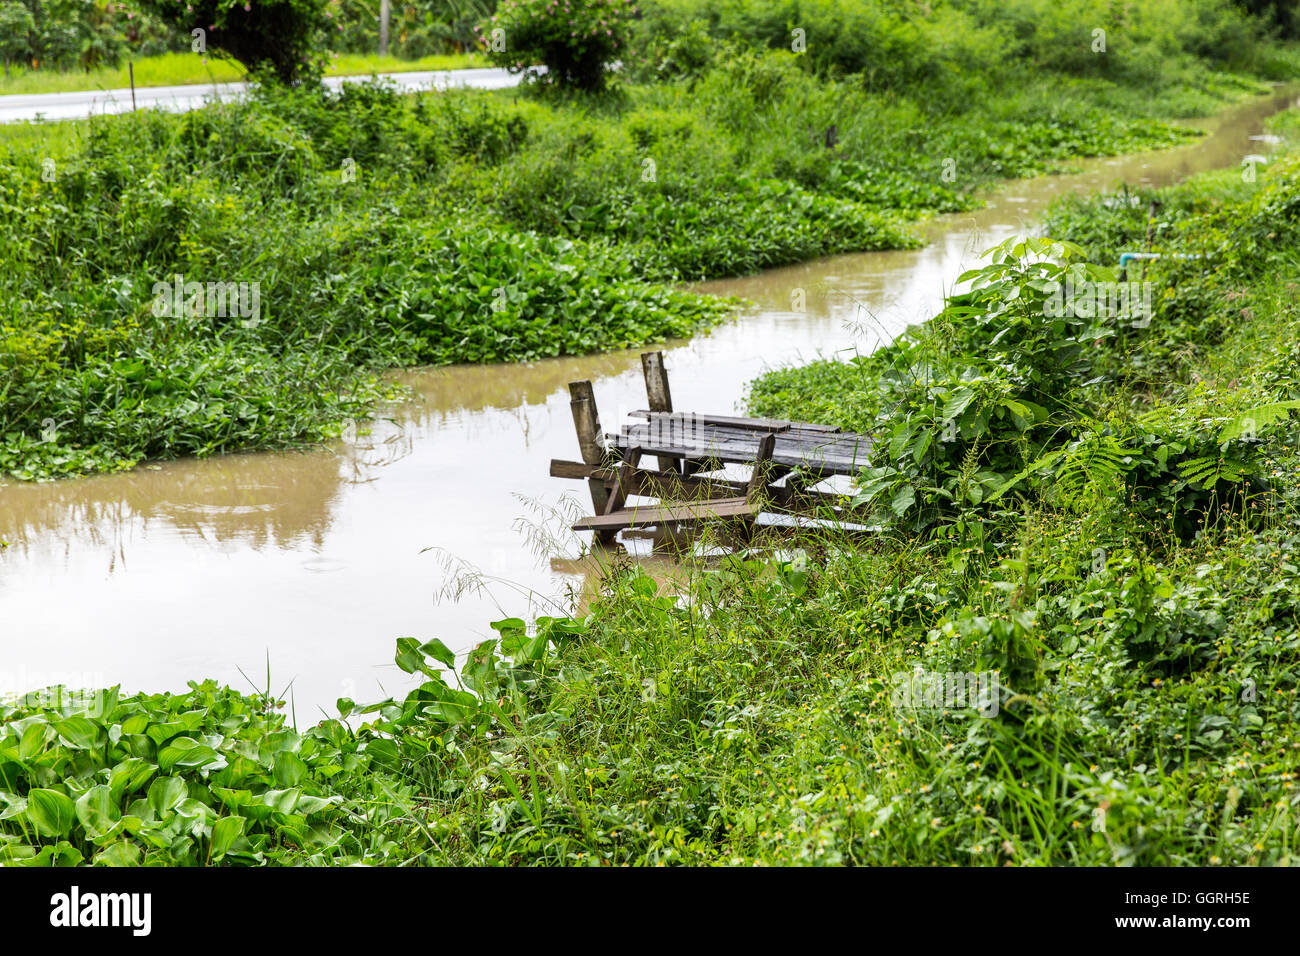 Piccolo malsicuro vecchio molo di legno in una strada ricoperta canal in upcountry Tailandia centrale Foto Stock